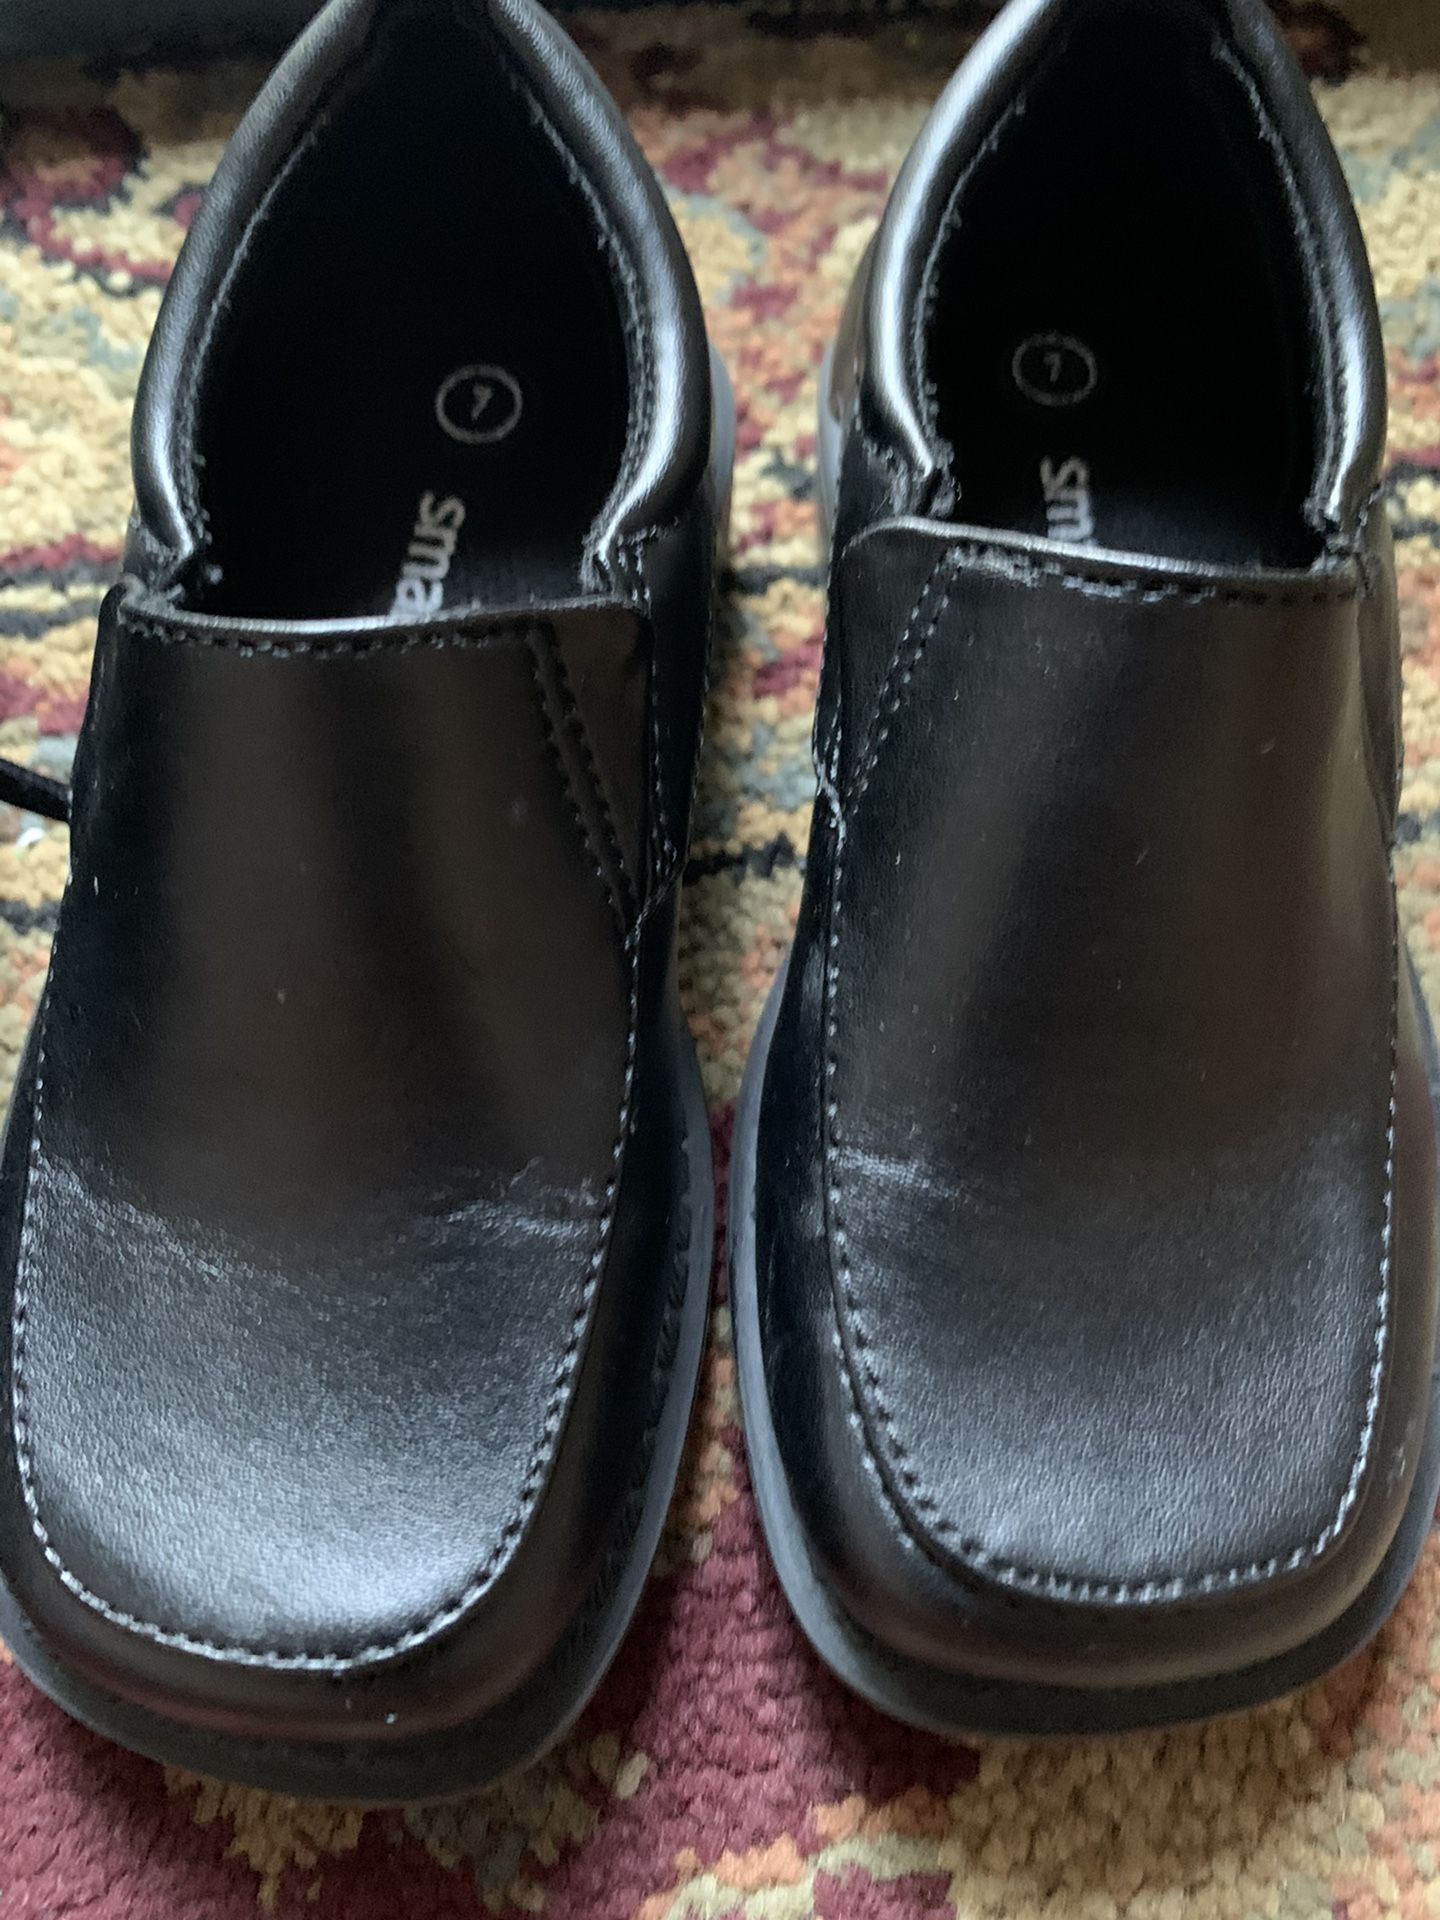 Toddler black dress shoes